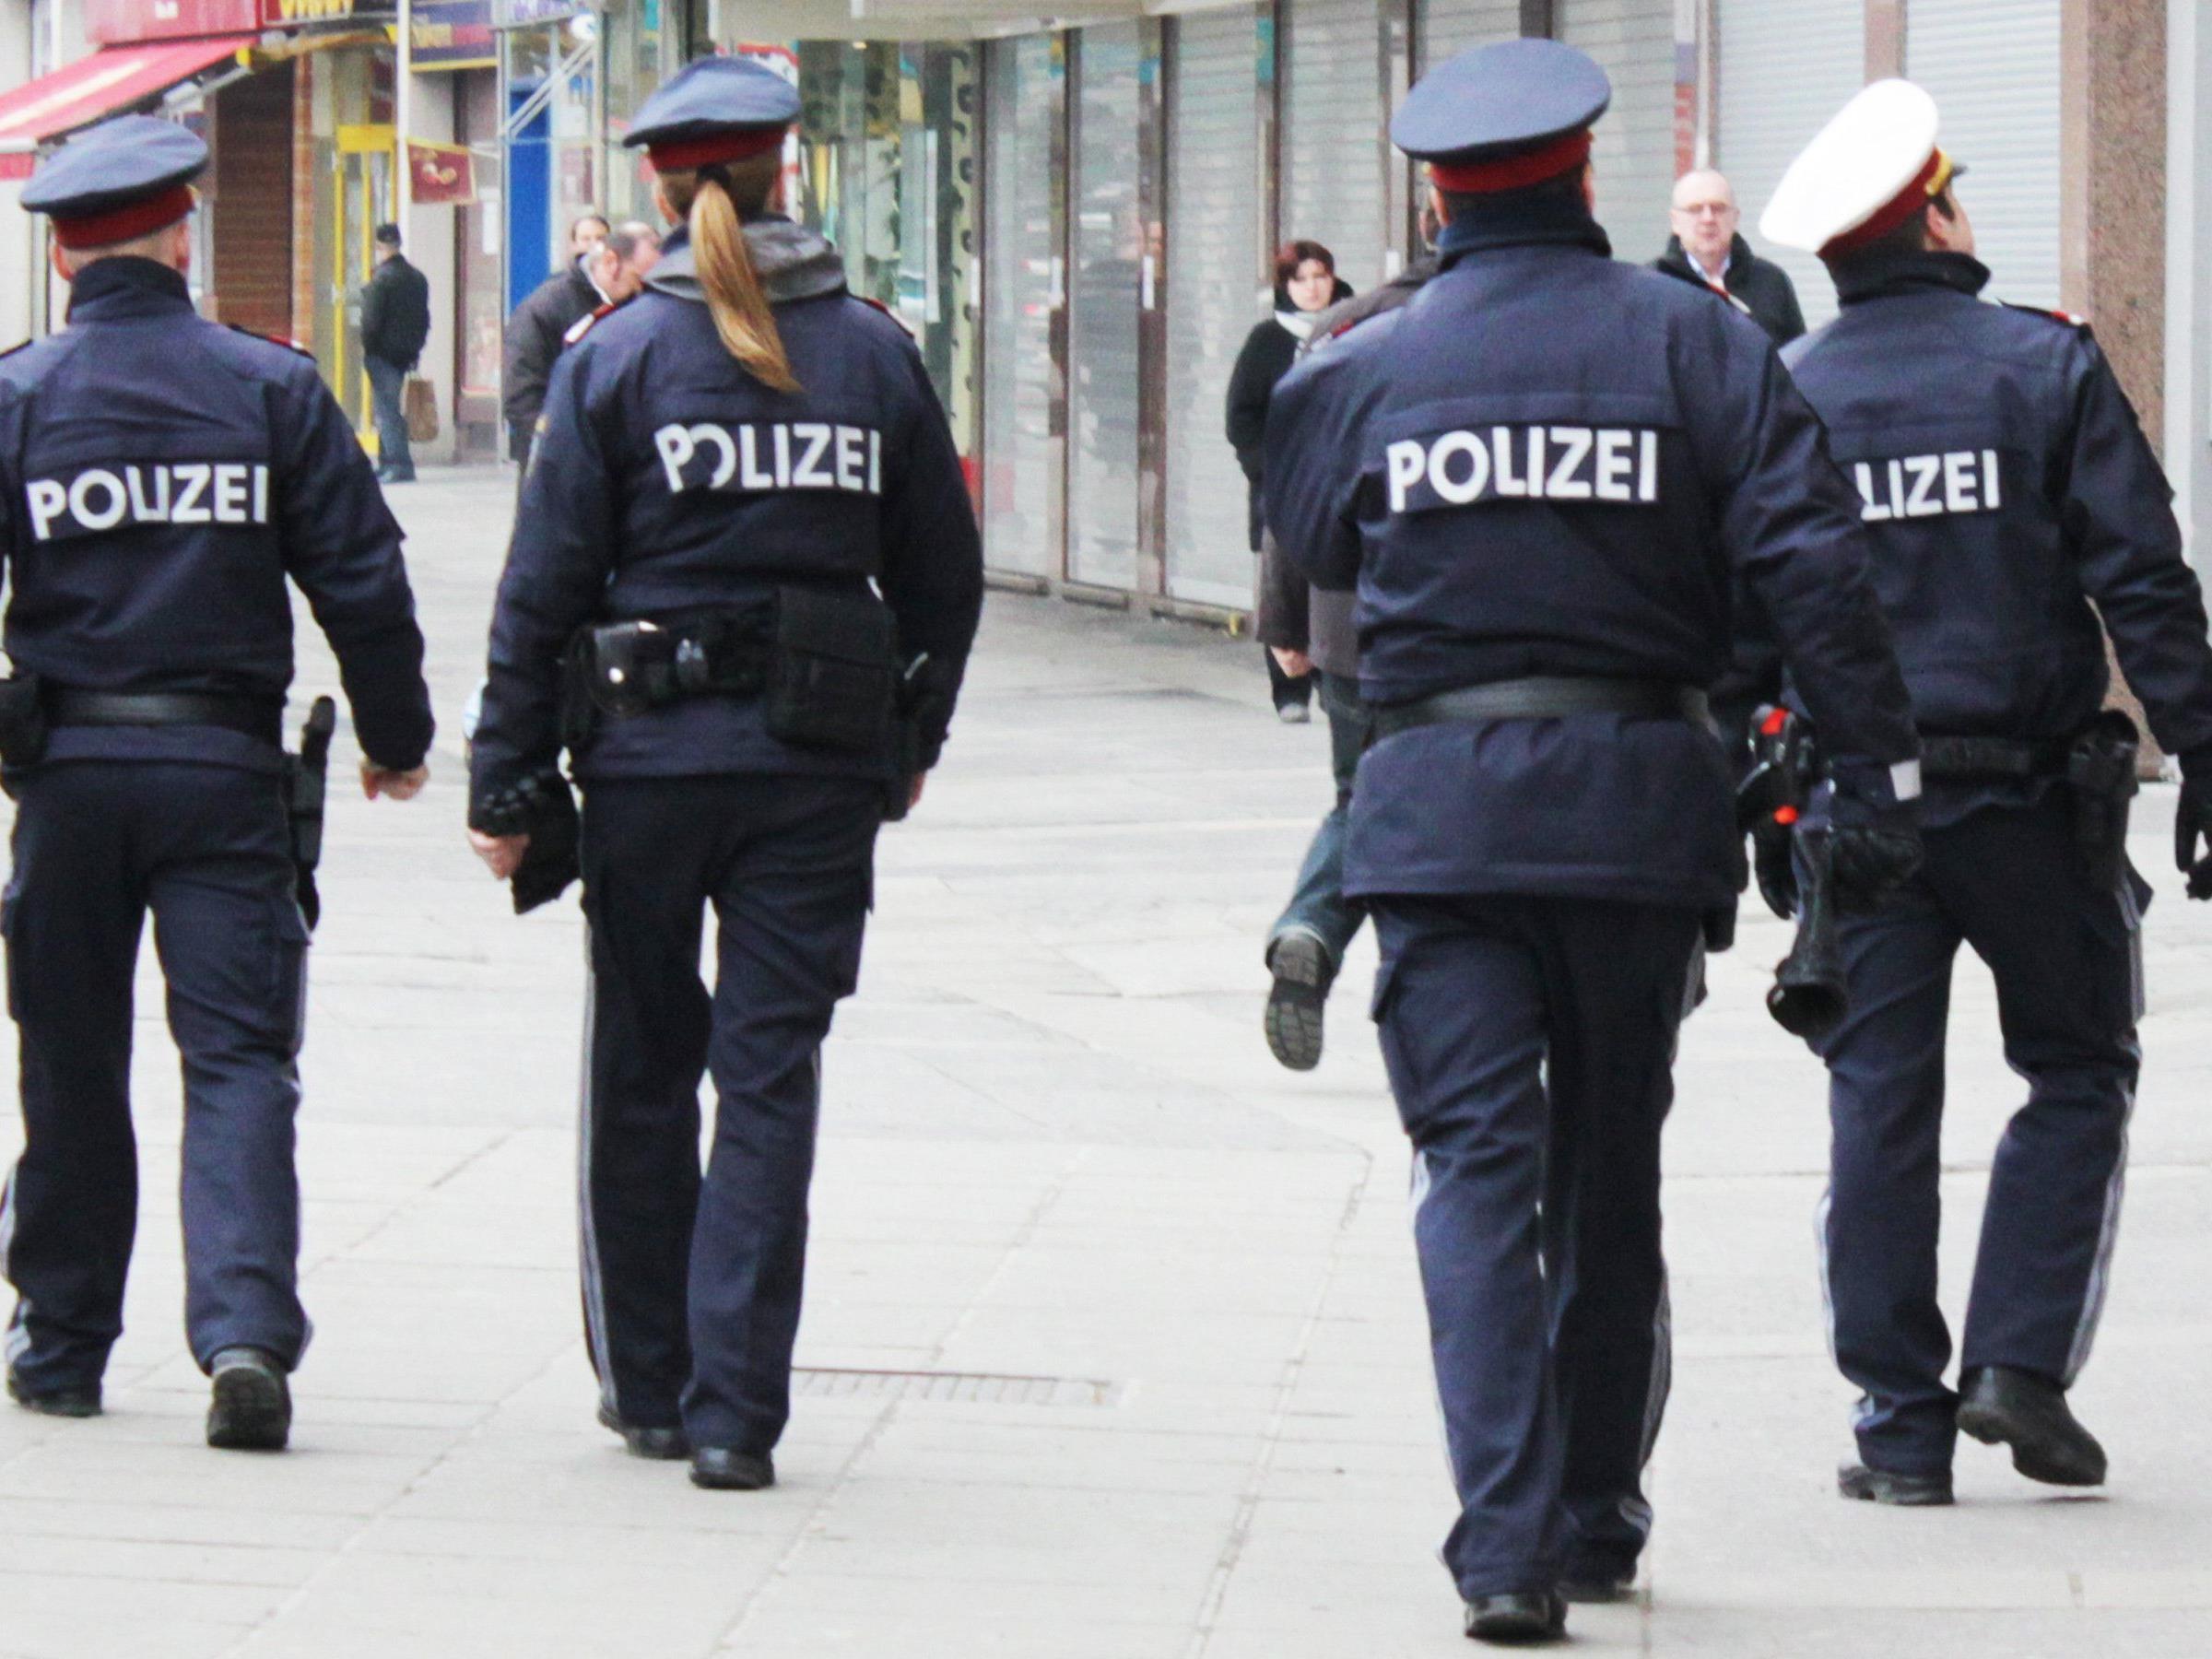 Polizisten retteten einem 78-Jährigen am Schwedenplatz vermutlich das Leben.